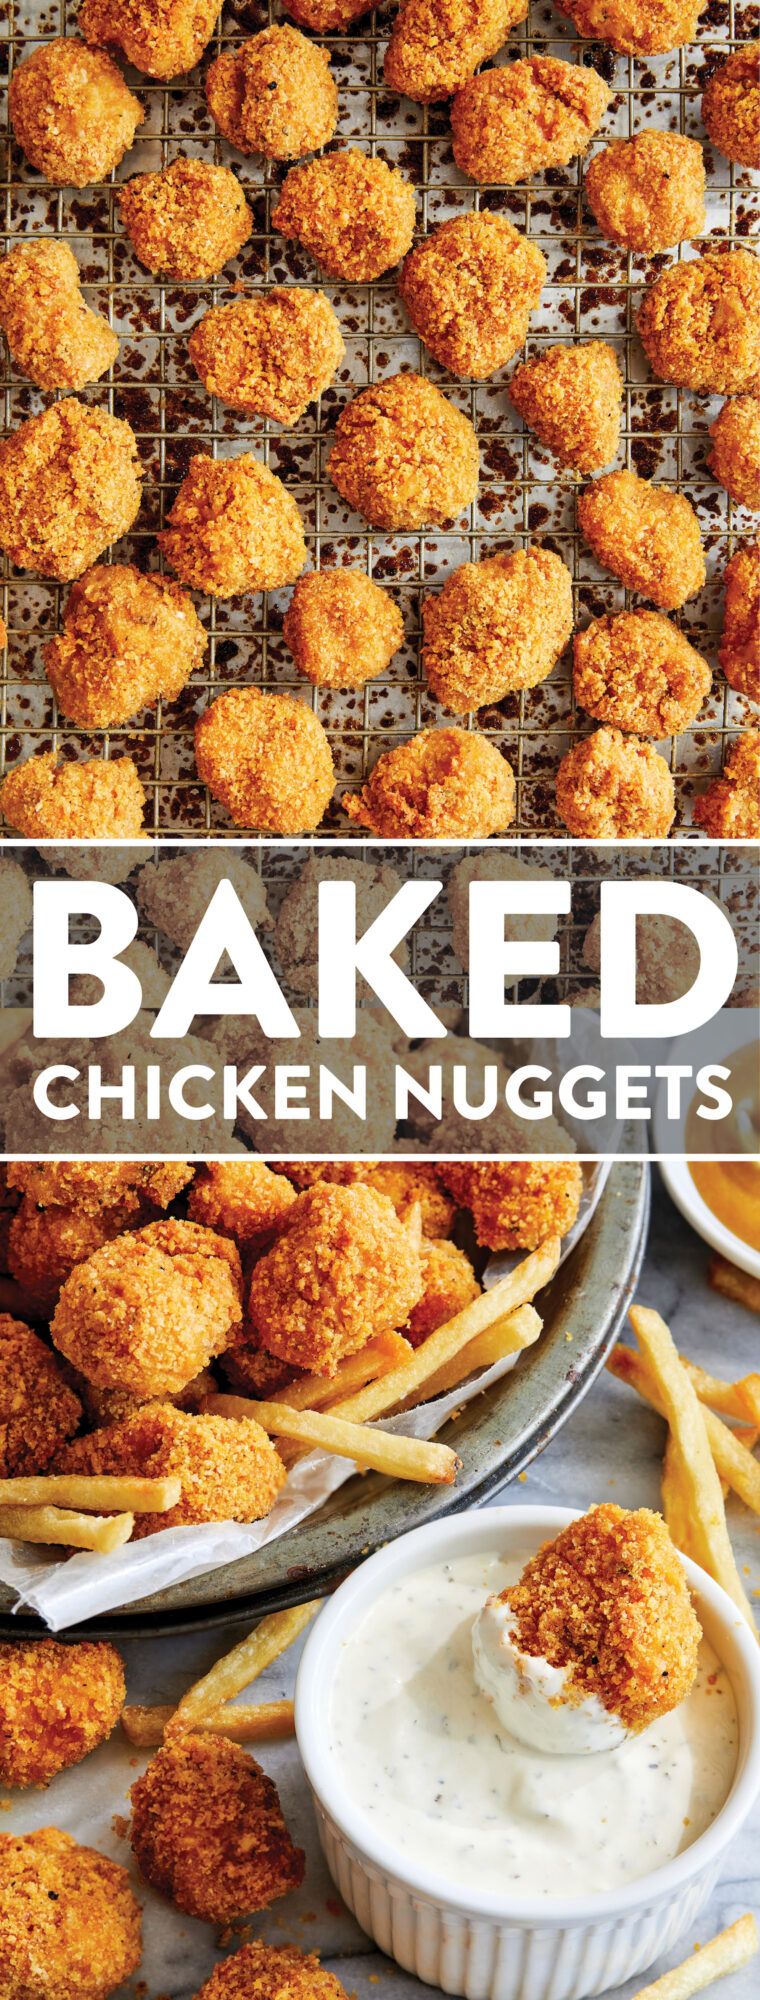 Baked Chicken Nuggets – Die BESTEN knusprig zarten Chicken Nuggets, die vollständig gebacken sind!  Mit Ketchup, Honig-Senf oder Ranch servieren!